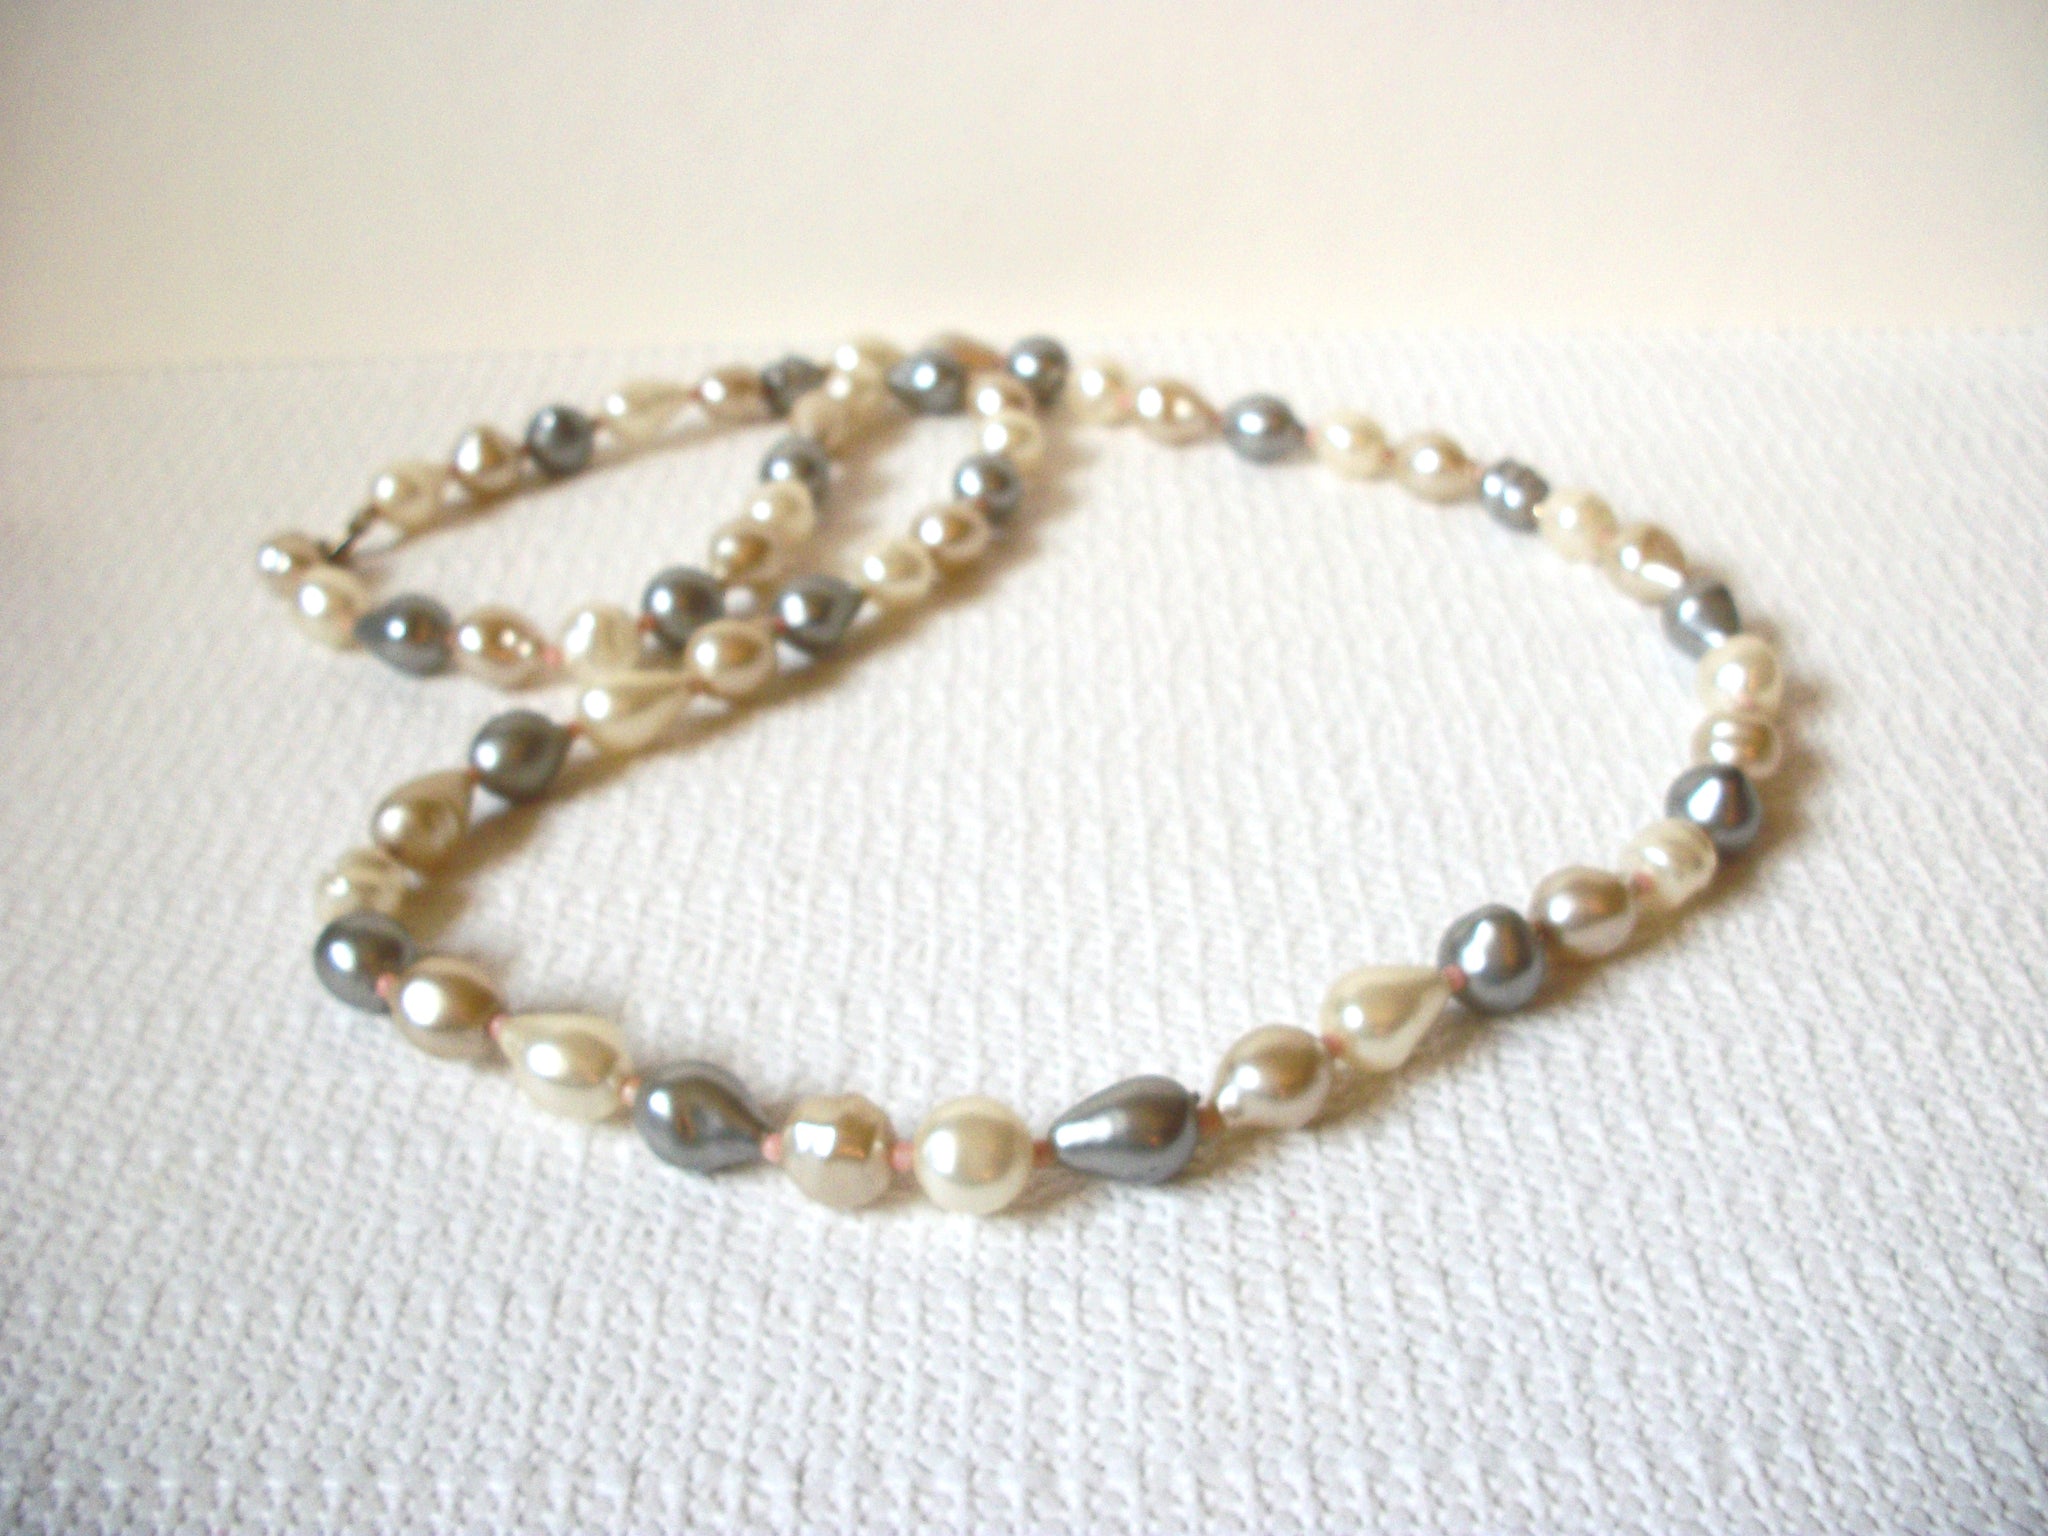 Vintage Faux Pearl Necklace 92720